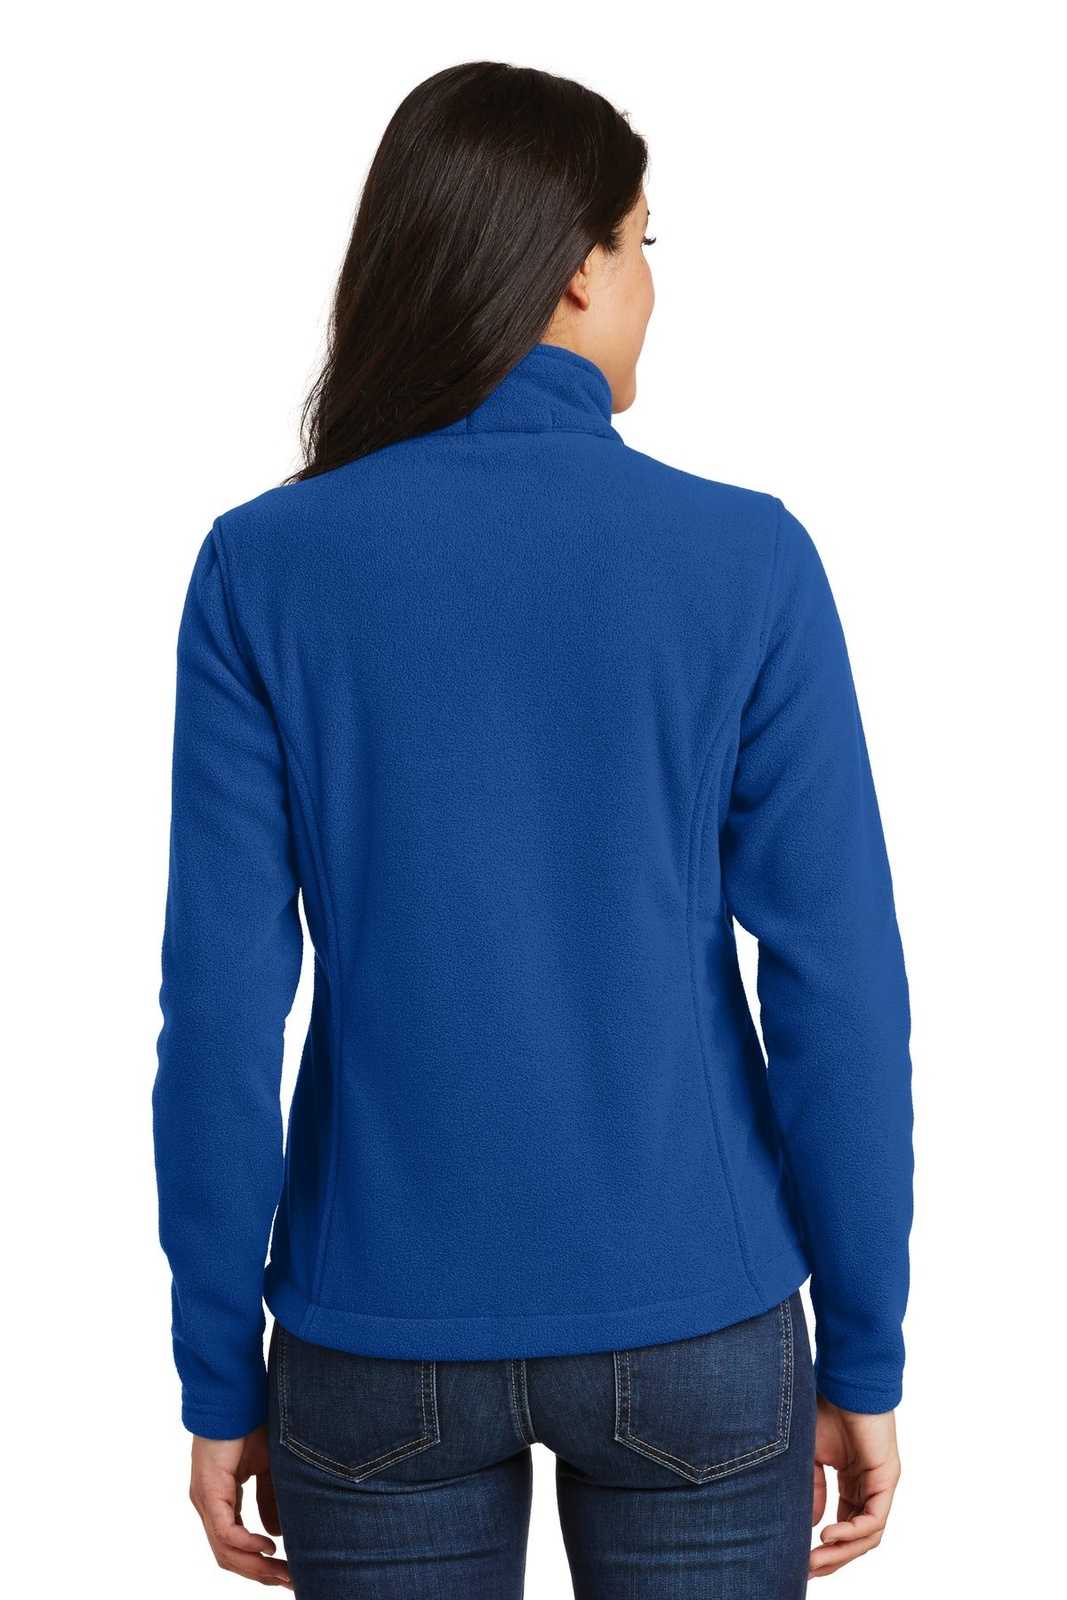 Port Authority L217 Ladies Value Fleece Jacket - True Royal - HIT a Double - 1